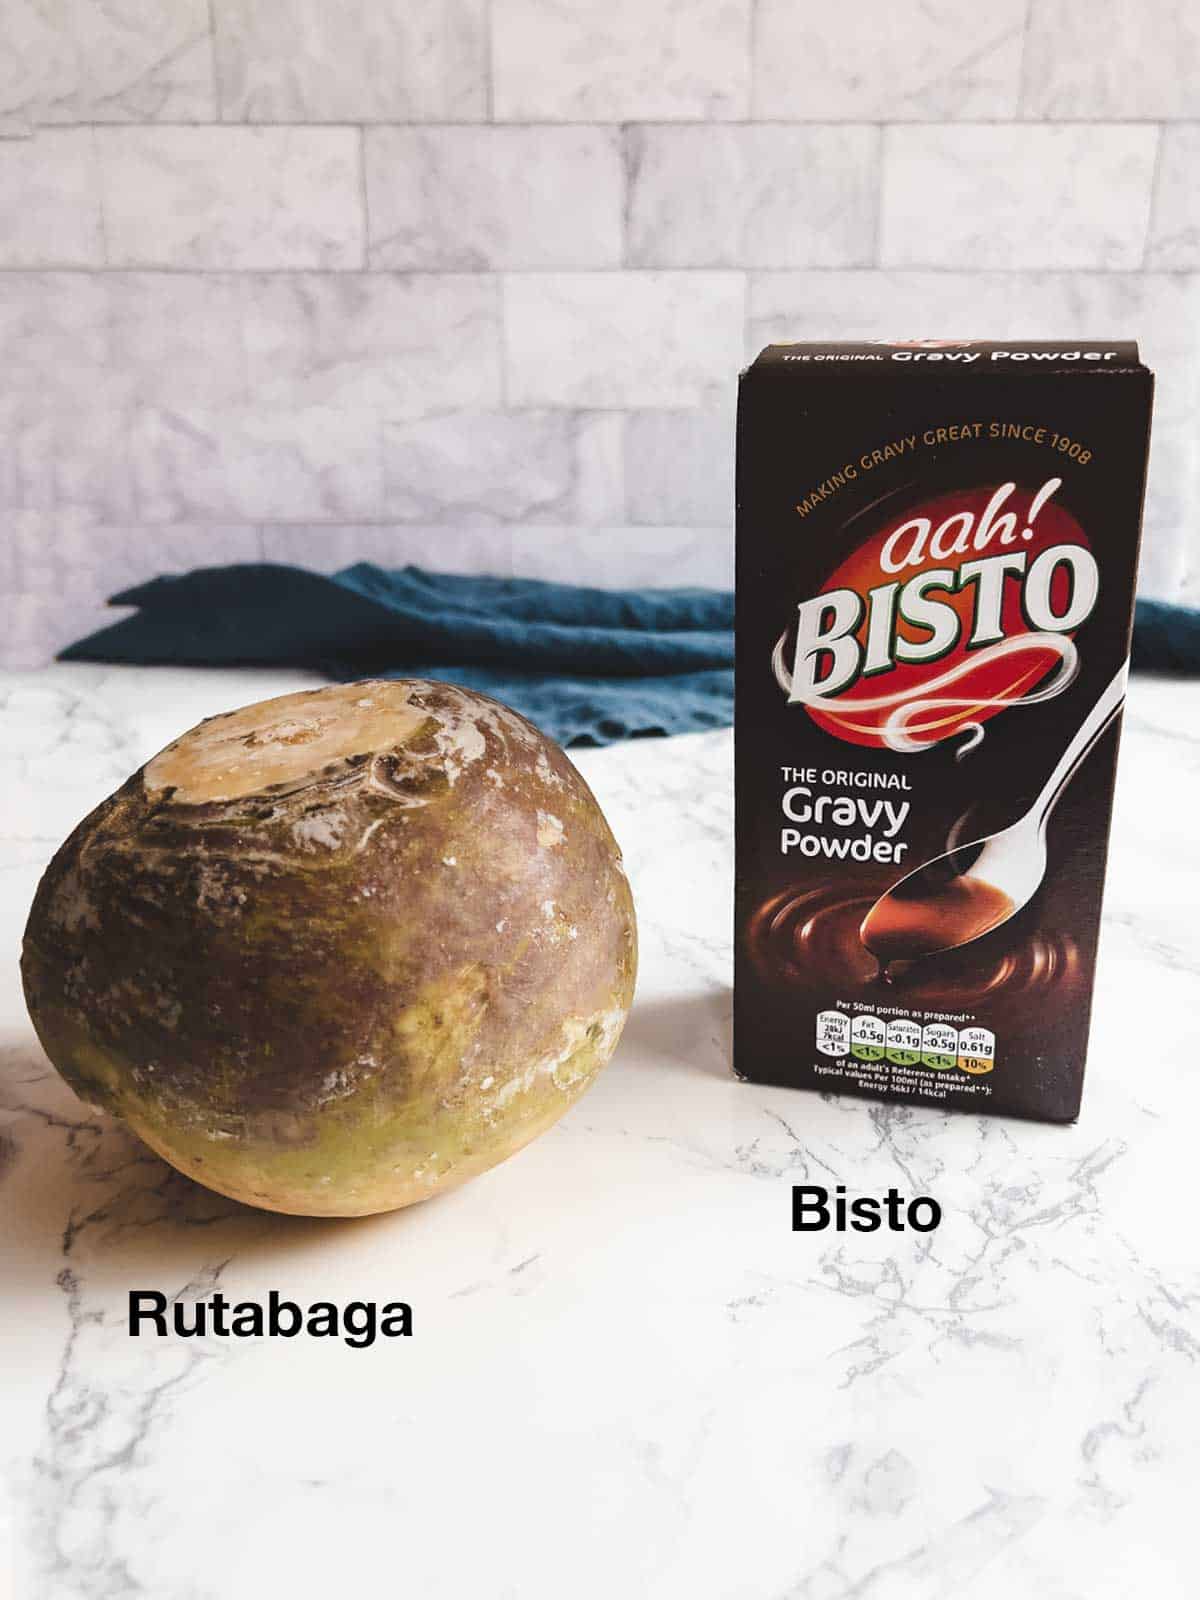 Rutabaga and Bisto